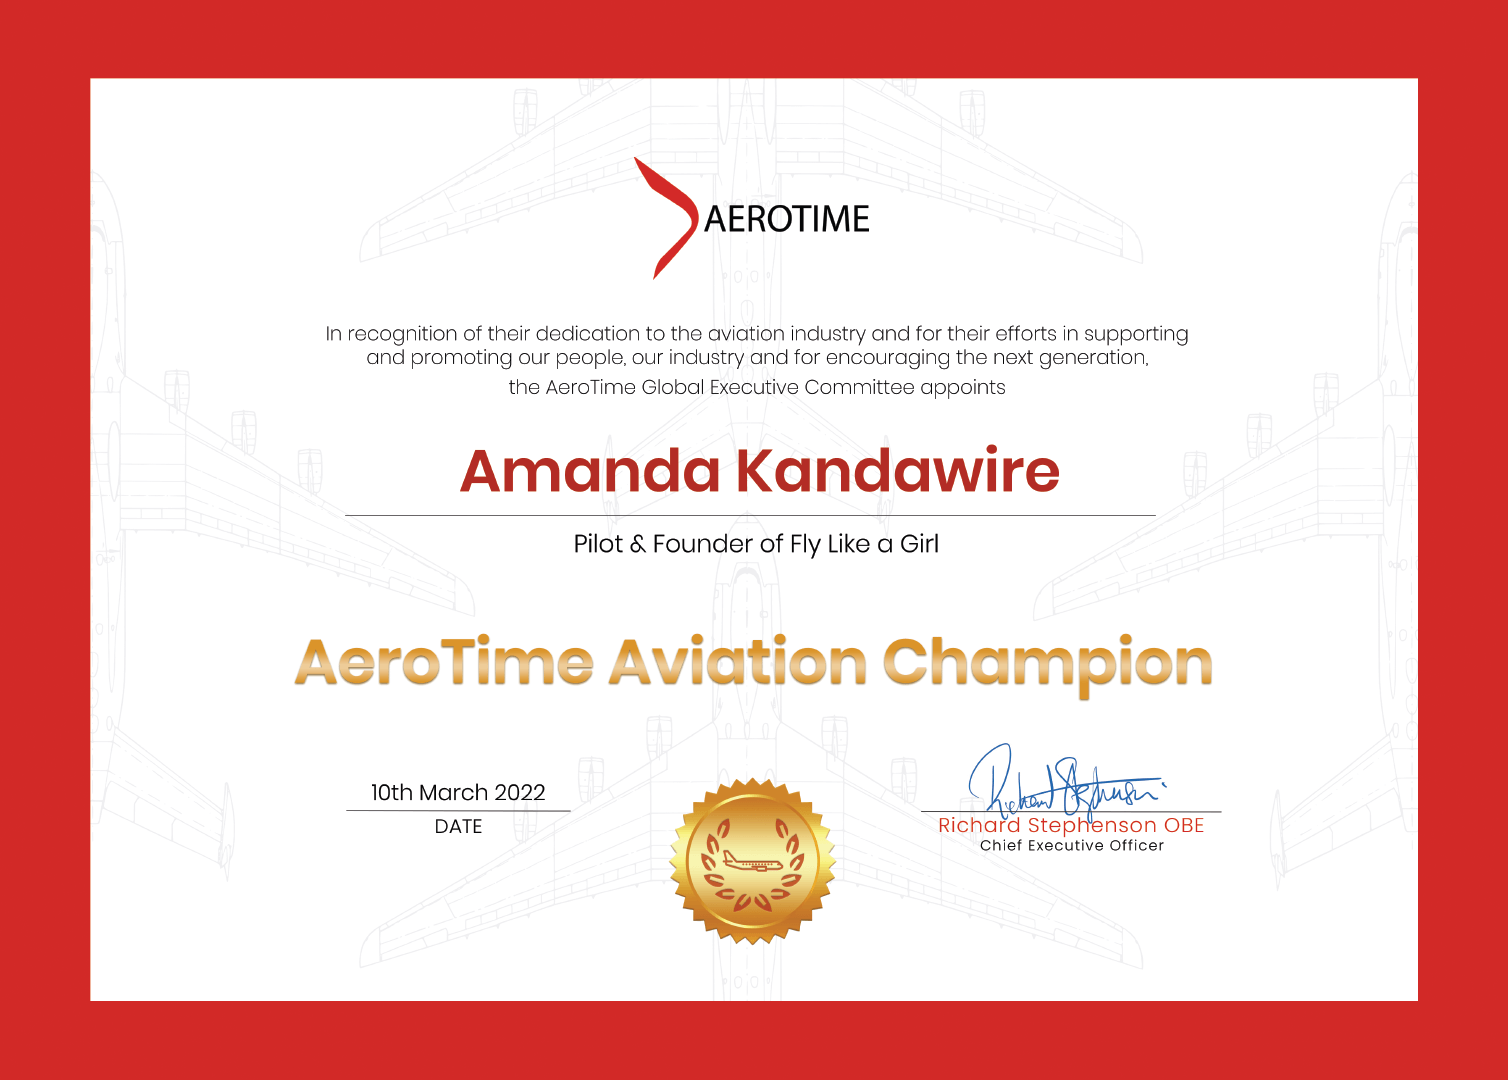 Amanda Kandawire, AeroTime Aviation Champion